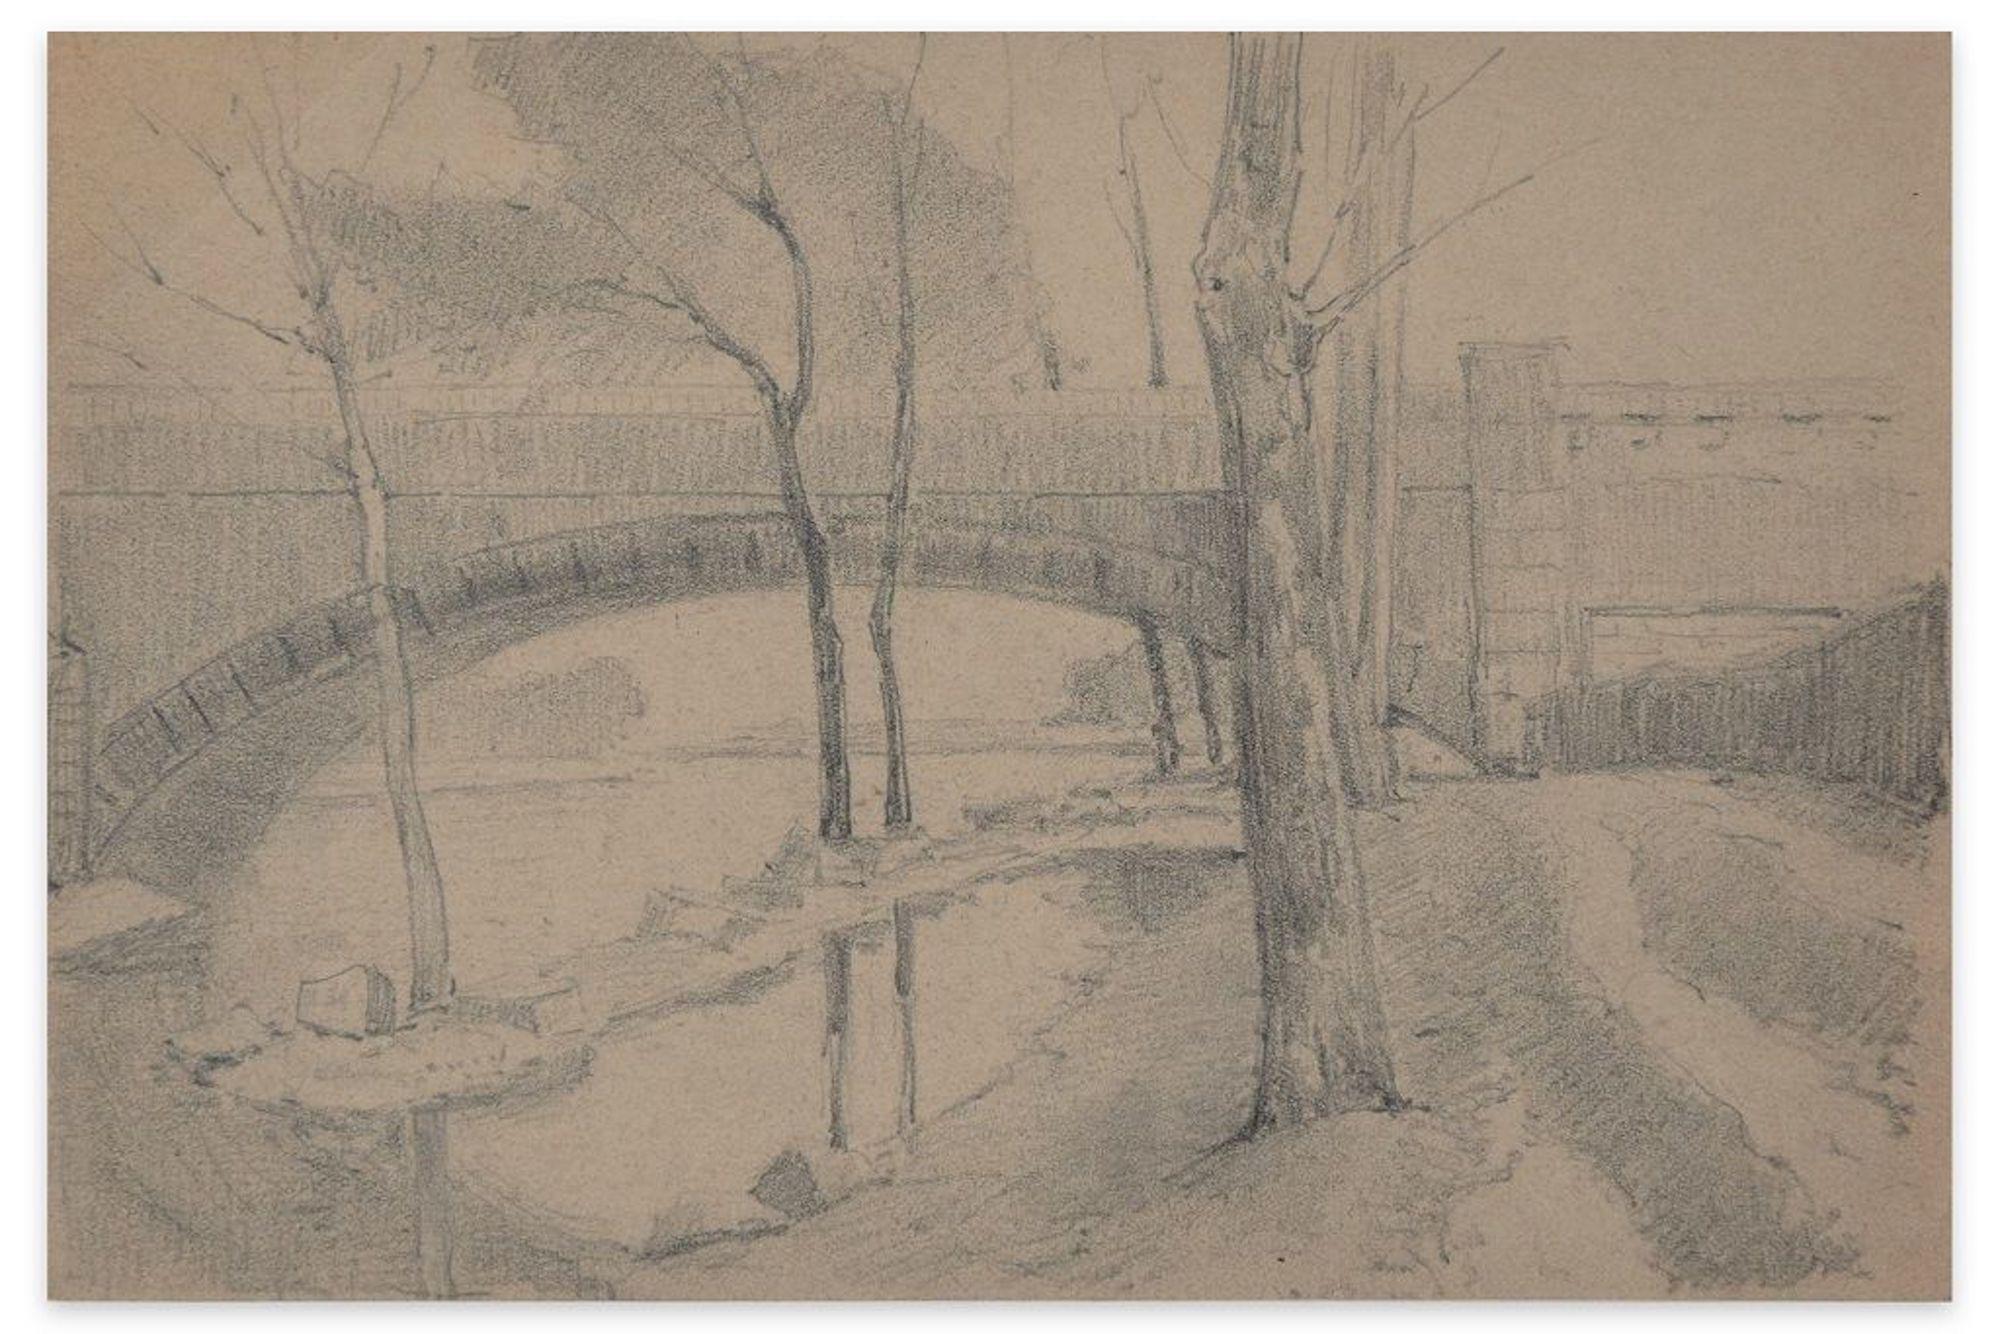 Landscape Art Emile-Louis Minet - Bridge on the River - Fusain et crayon par E.-L. Minet - 1919